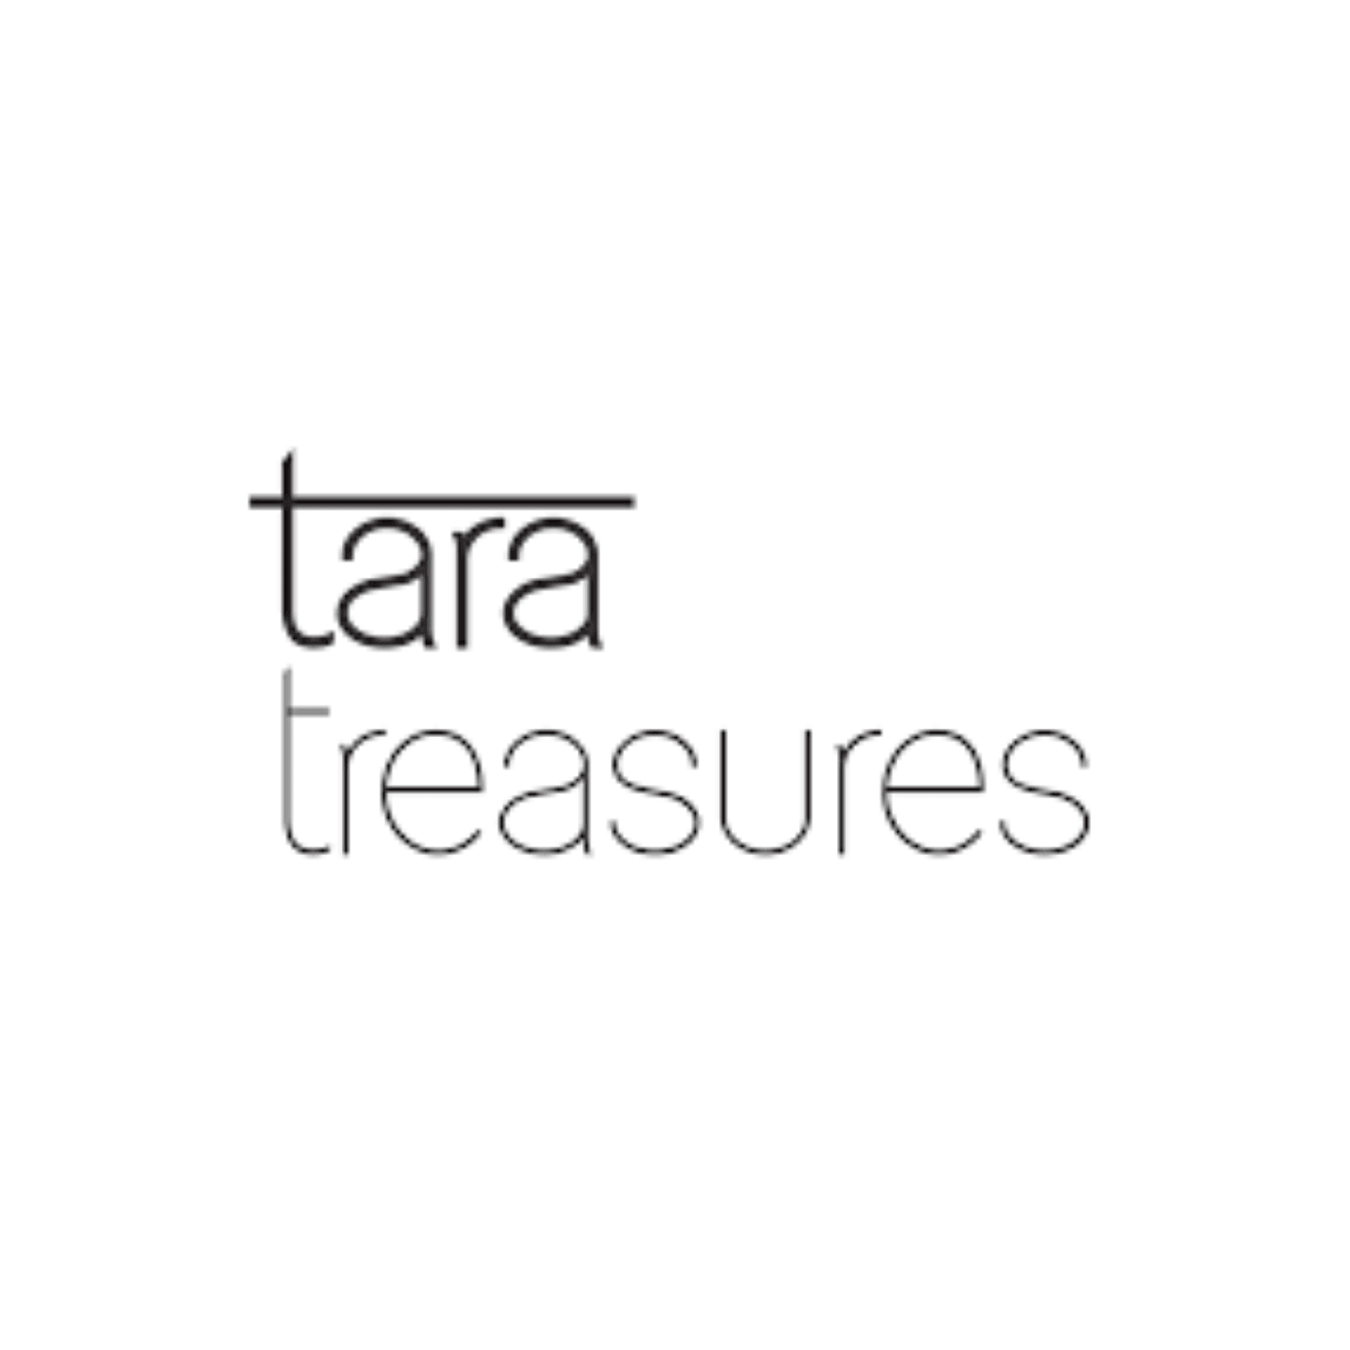 Tara Treasures Felt Toys Australia - My Playroom 